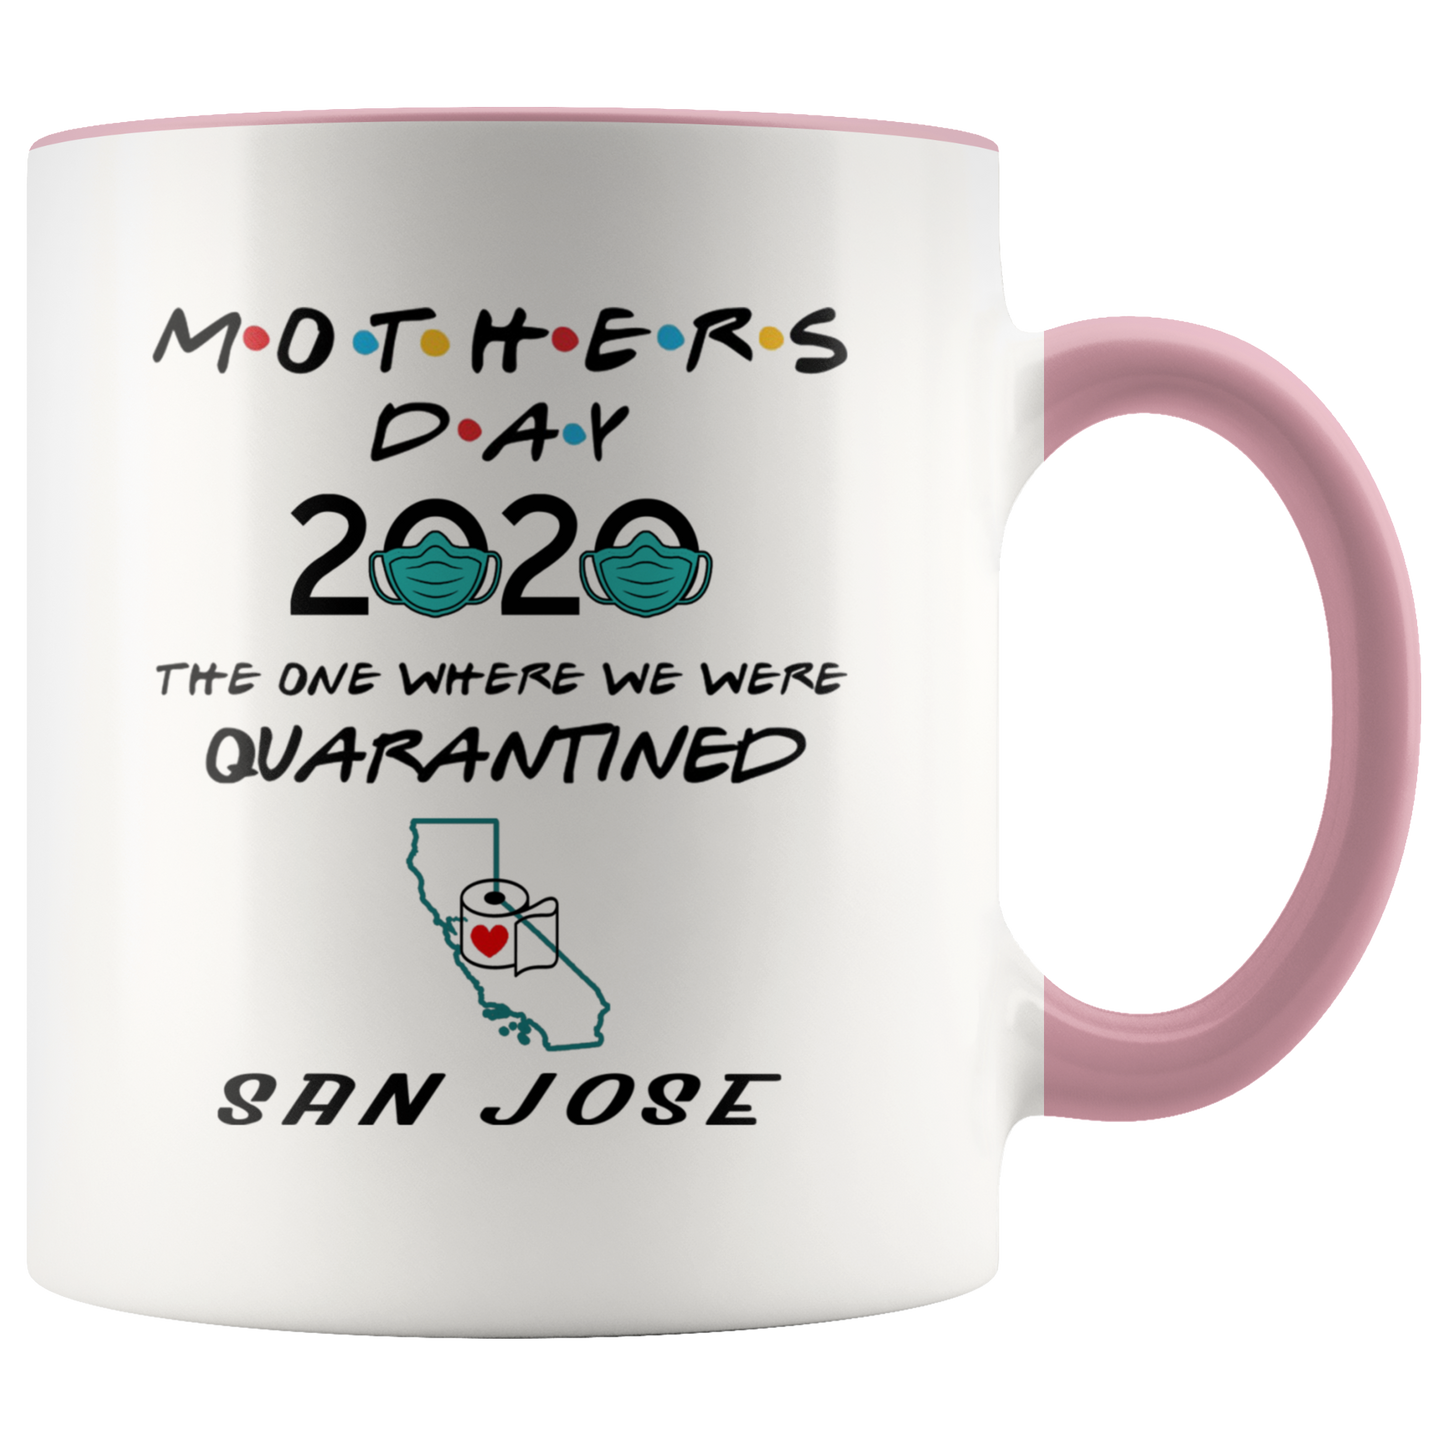 MUG01221352627-sp-25823 - [ San Jose | California ] (CC_Accent_Mug_) Mothers Day 2020 Mug Quarantine - The One Where We Were Quar